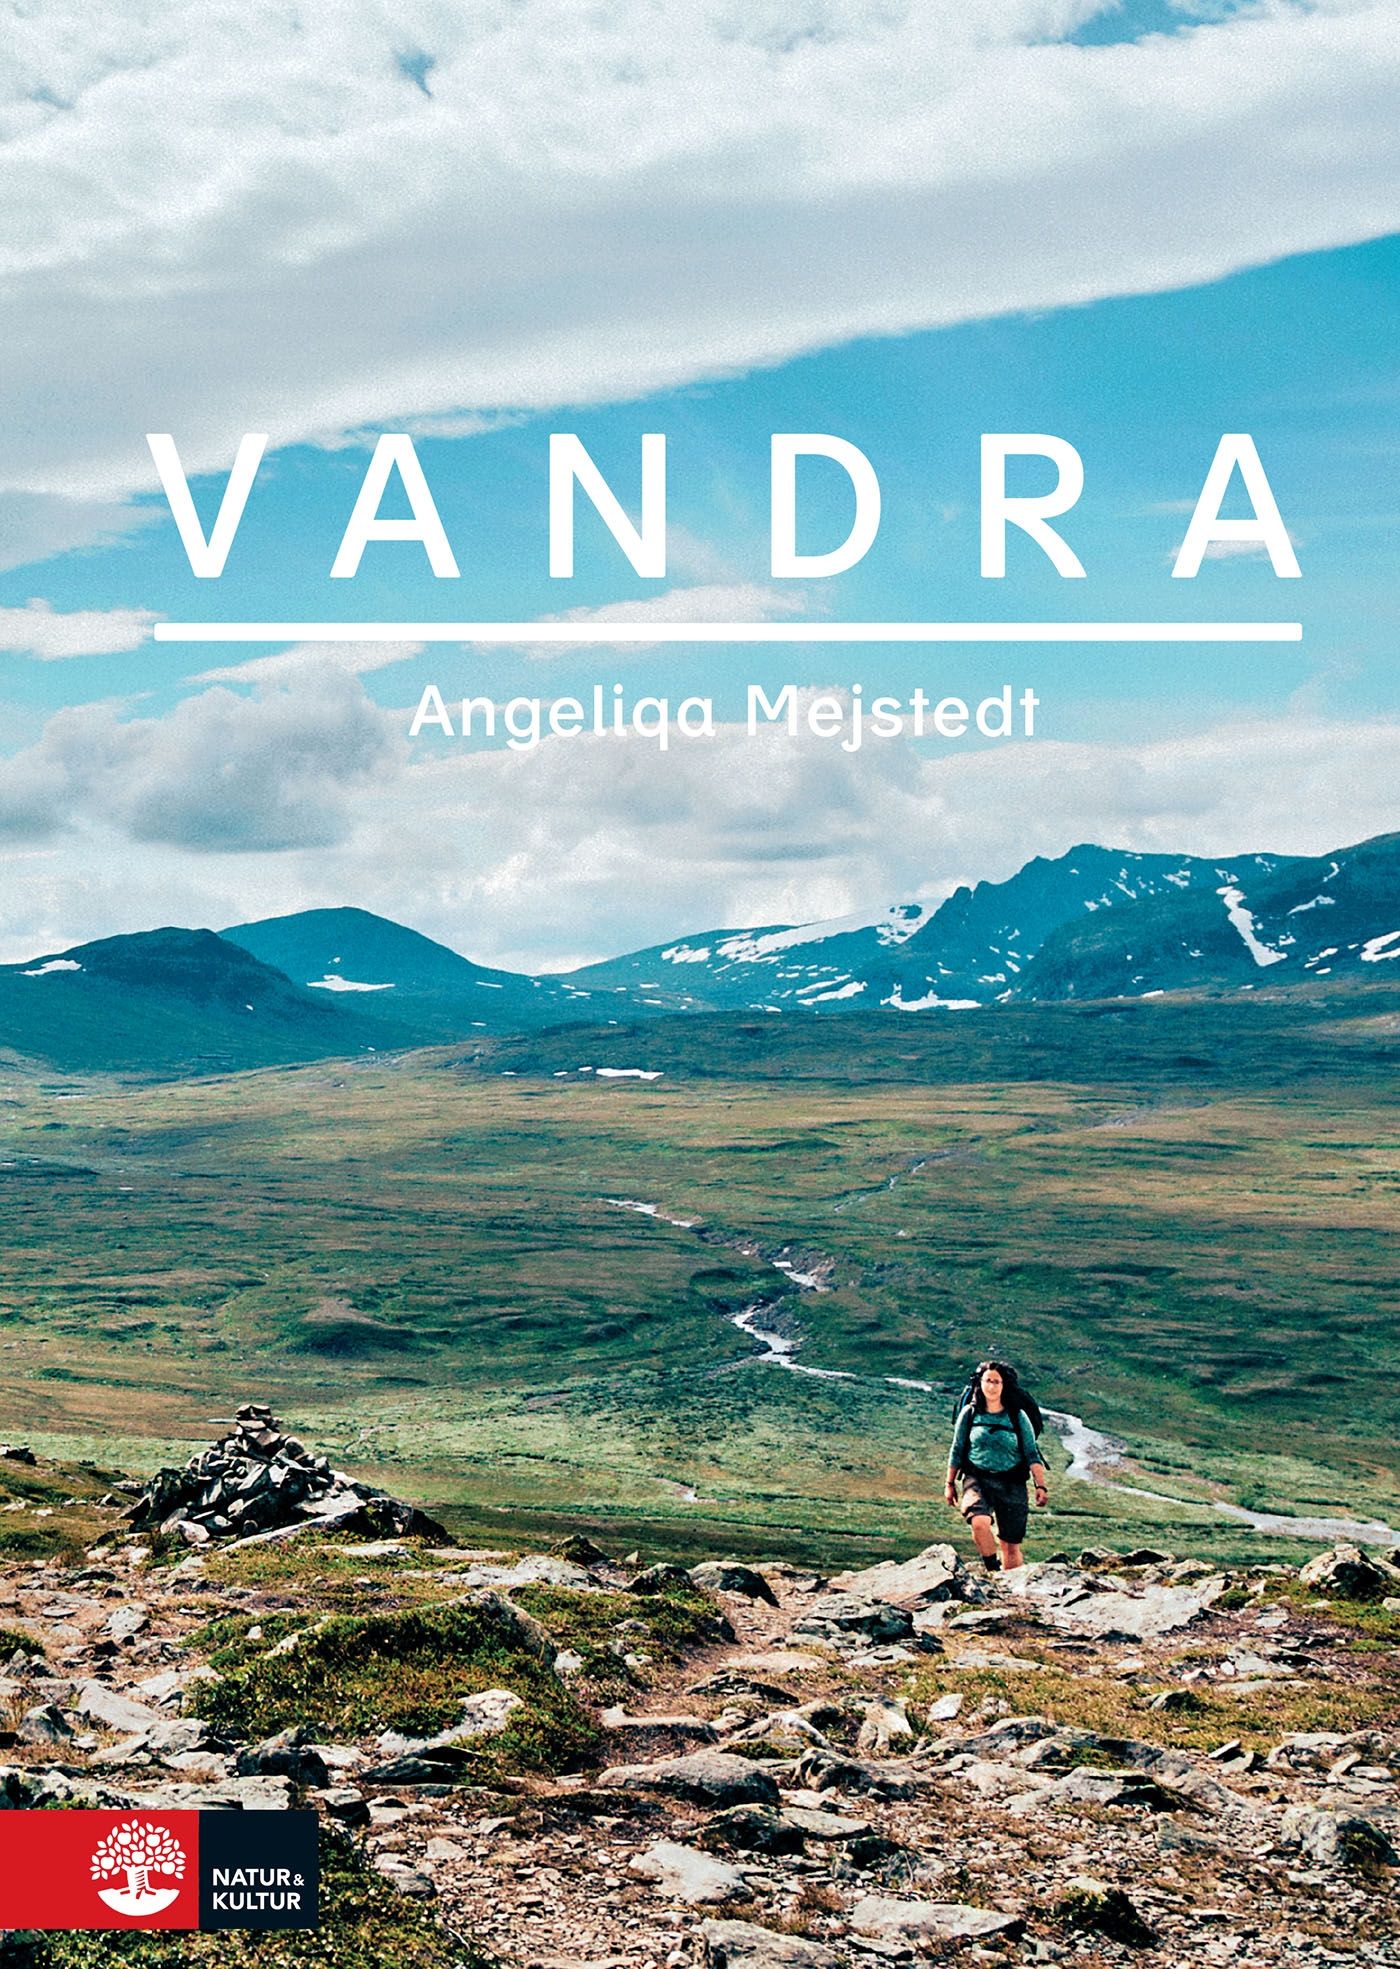 Vandra, e-bog af Angeliqa Mejstedt